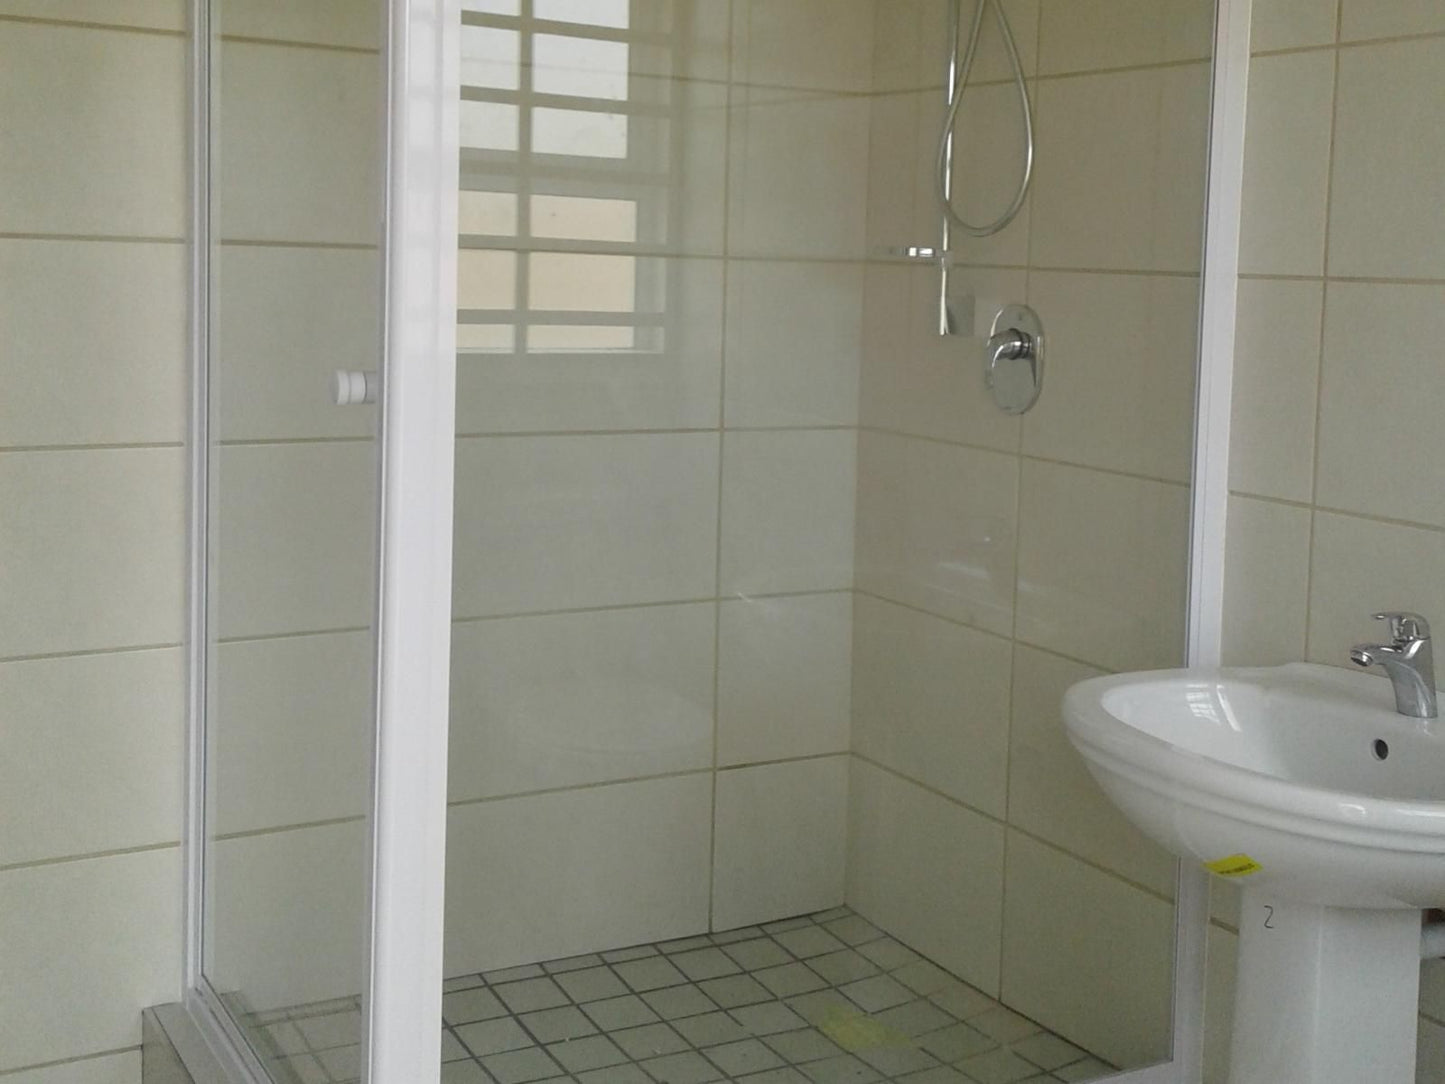 Come Home In Oudtshoorn Oudtshoorn Western Cape South Africa Colorless, Bathroom